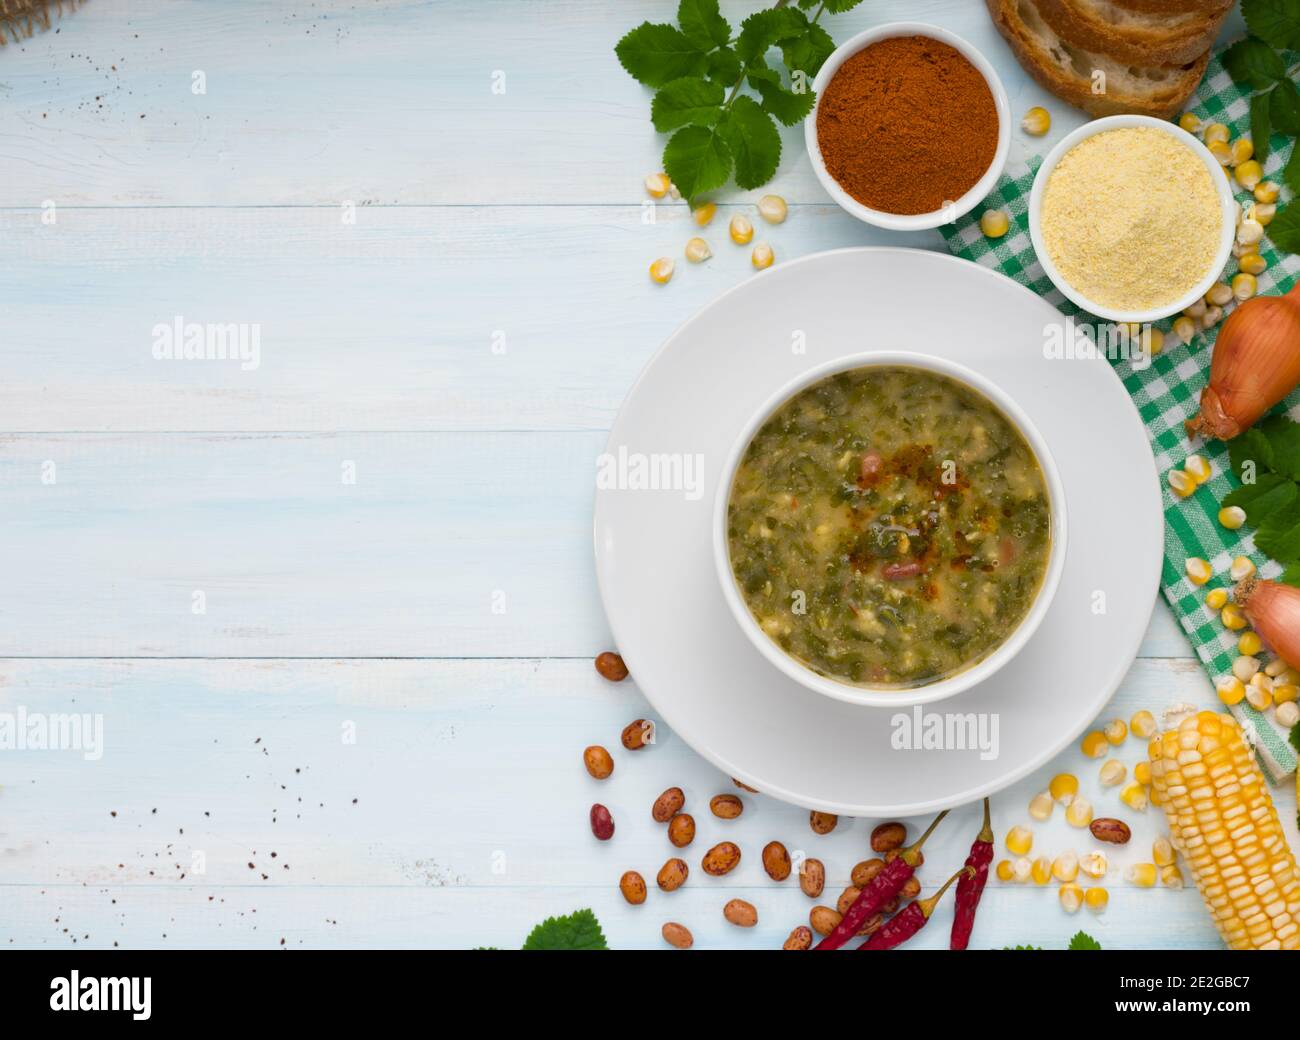 Hemlok-Suppe aus der Schwarzmeerregion, türkische Küche Stockfoto